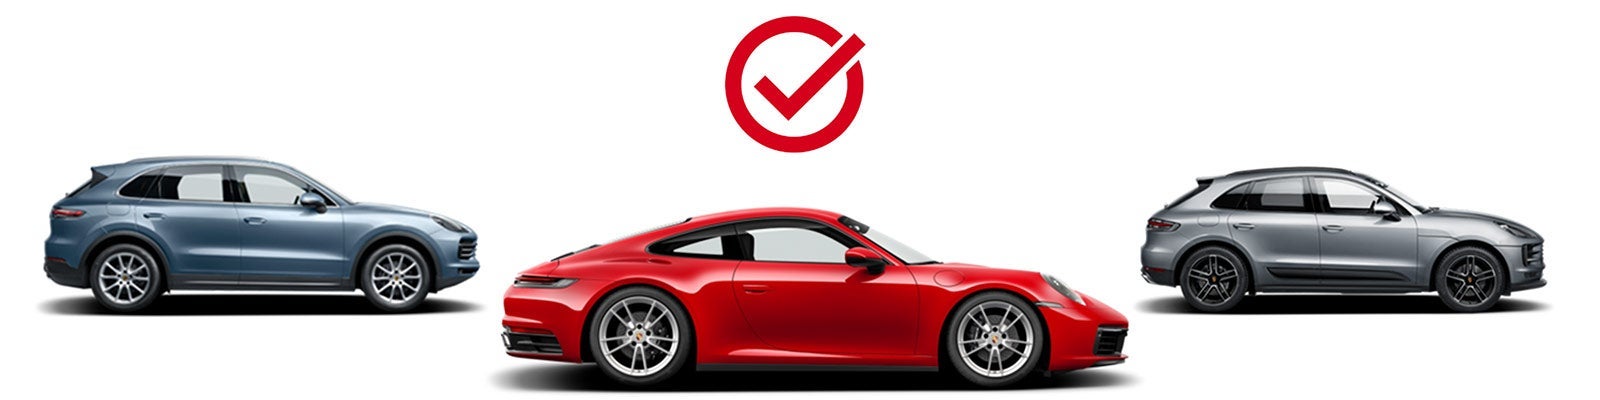 Choose Your Porsche | Porsche North Houston in Houston TX